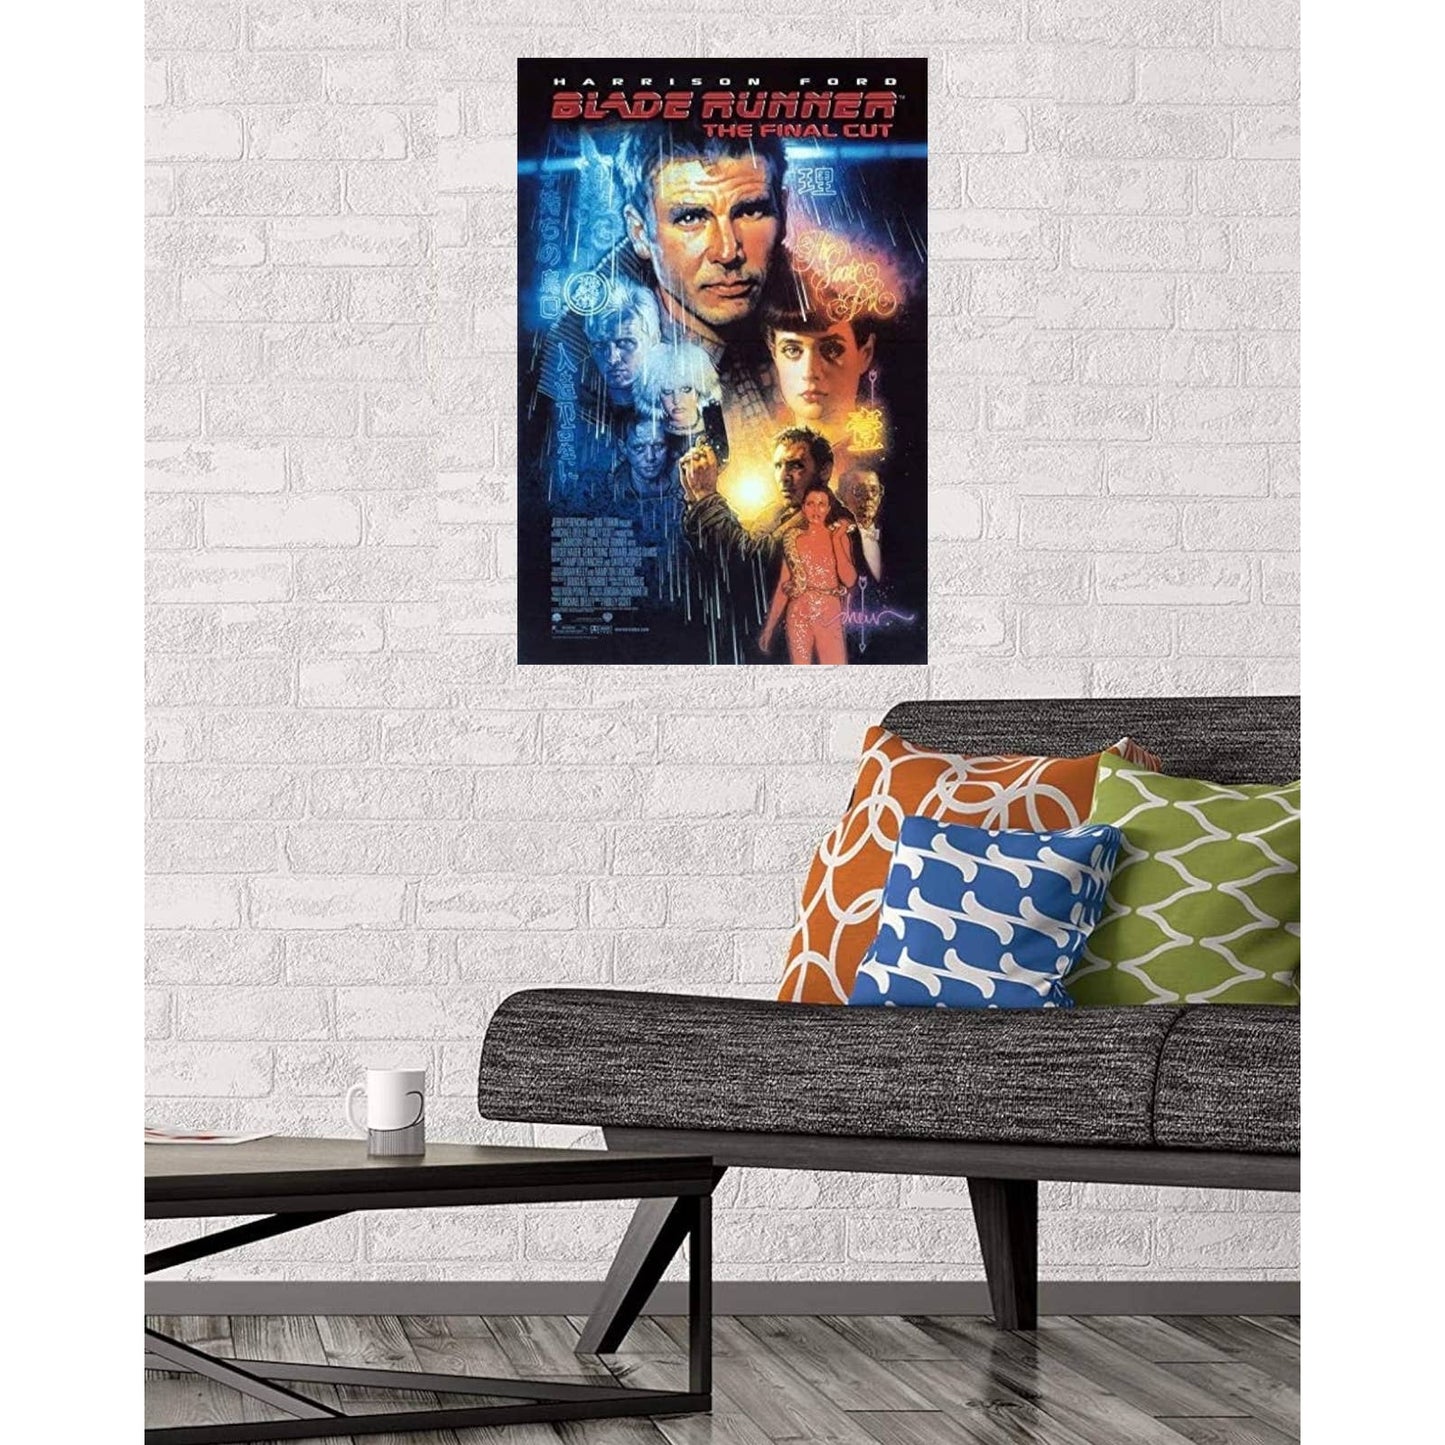 Blade Runner The Final Cut Movie Poster Print Wall Art 16"x24"